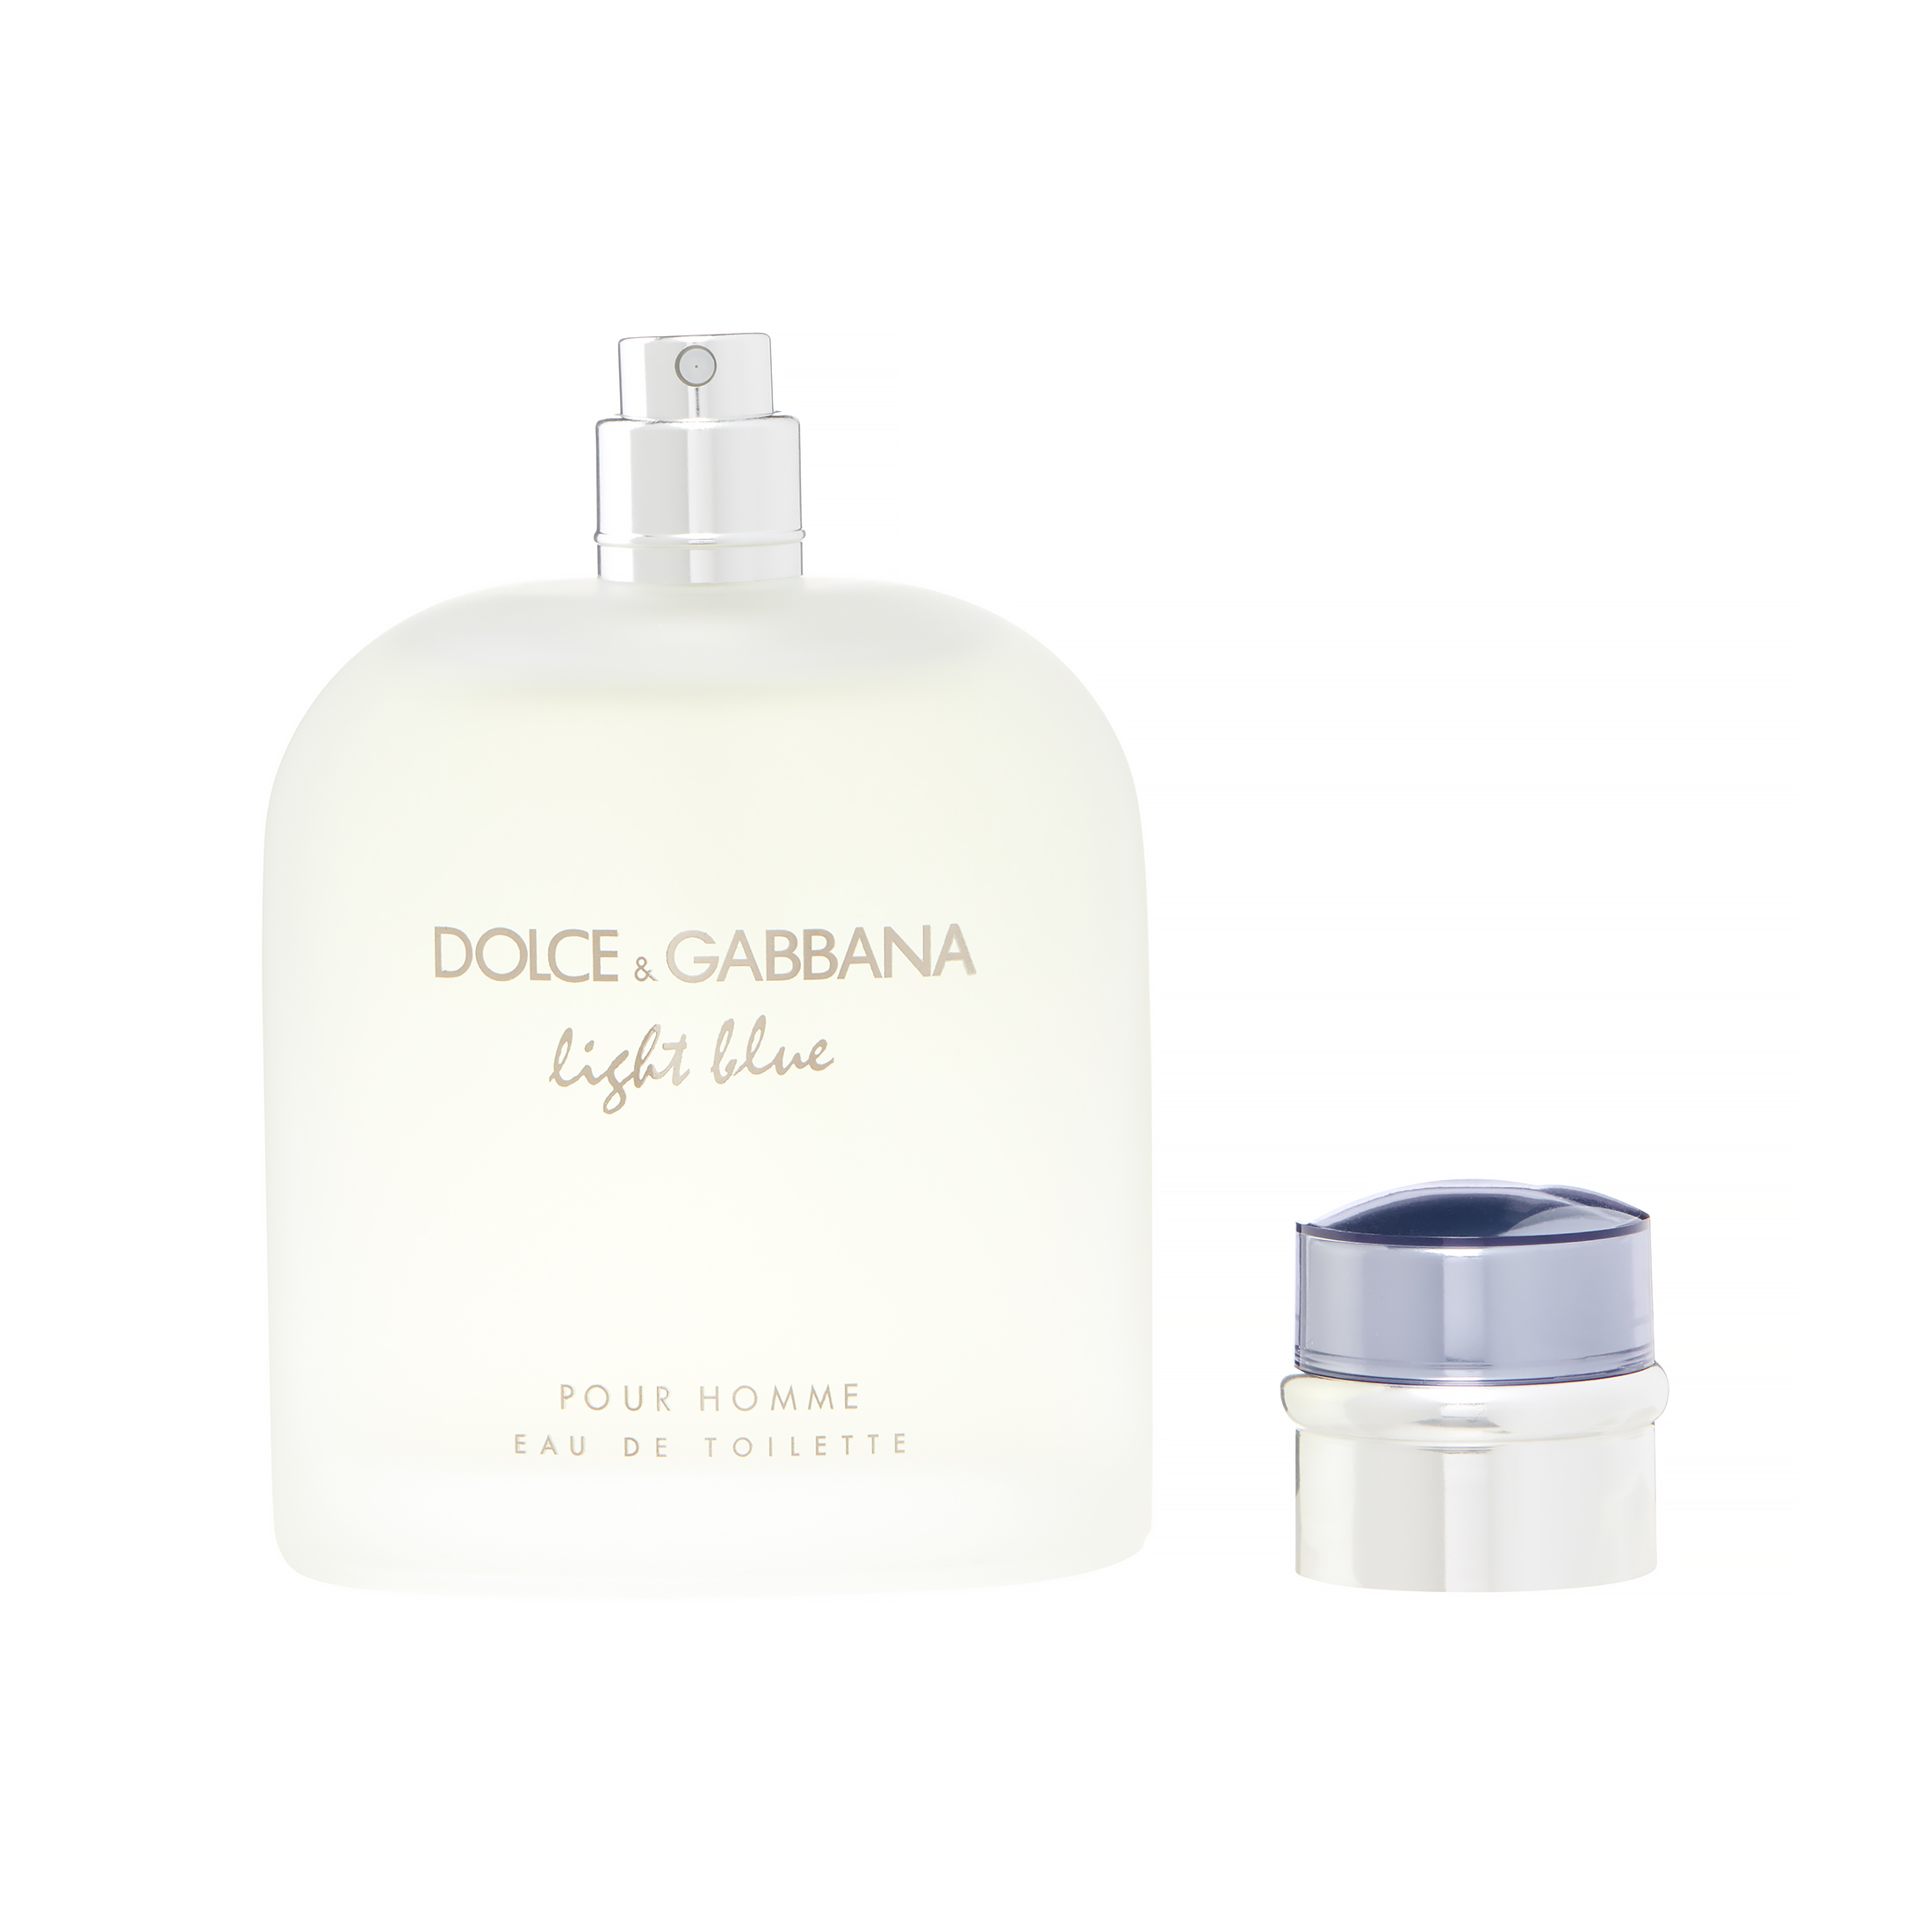 Dolce & Gabbana Light Blue Eau de Toilette, Cologne for Men, 4.2 Oz - image 1 of 6